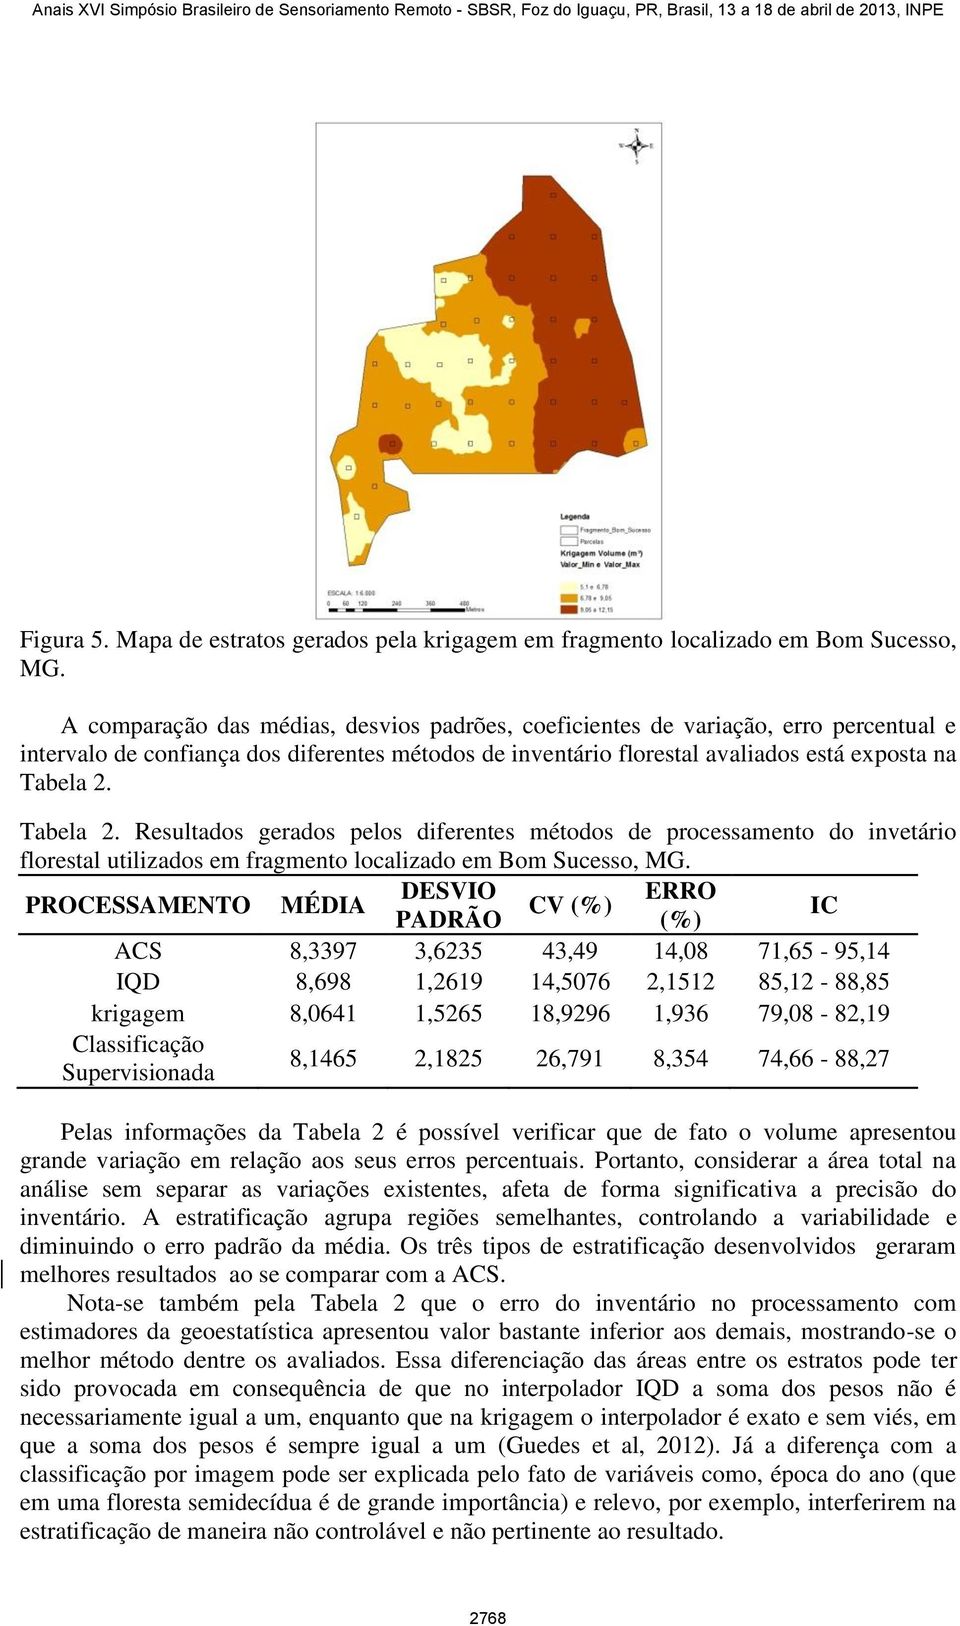 Tabela 2. Resultados gerados pelos diferentes métodos de processamento do invetário florestal utilizados em fragmento localizado em Bom Sucesso, MG.